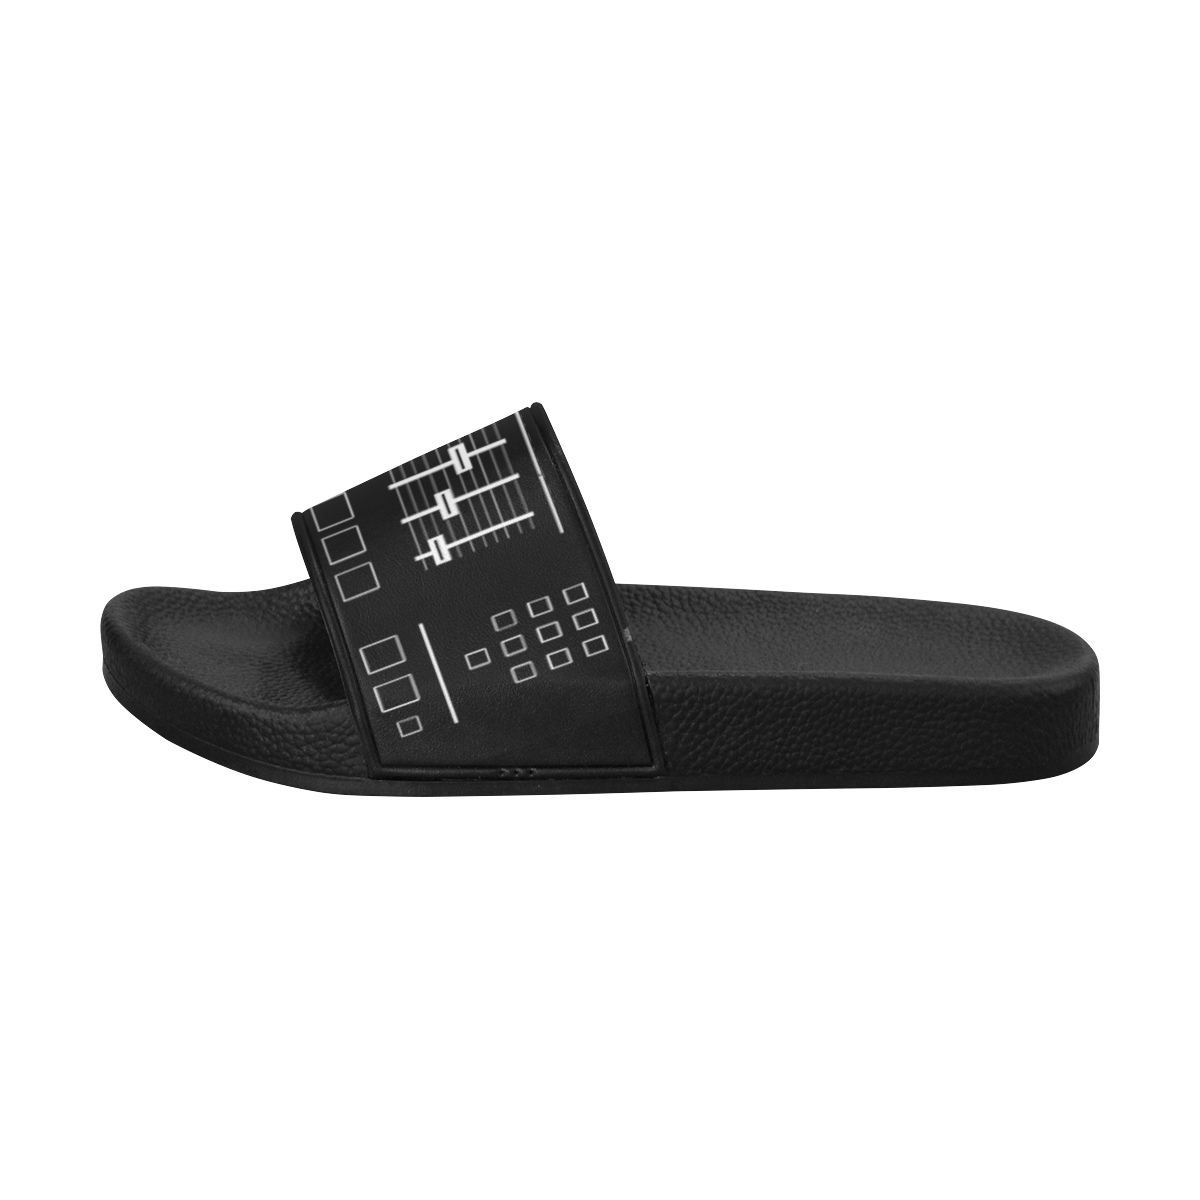 SP- 1200 Sandals Men's Slide Sandals/Large Size (Model 057)